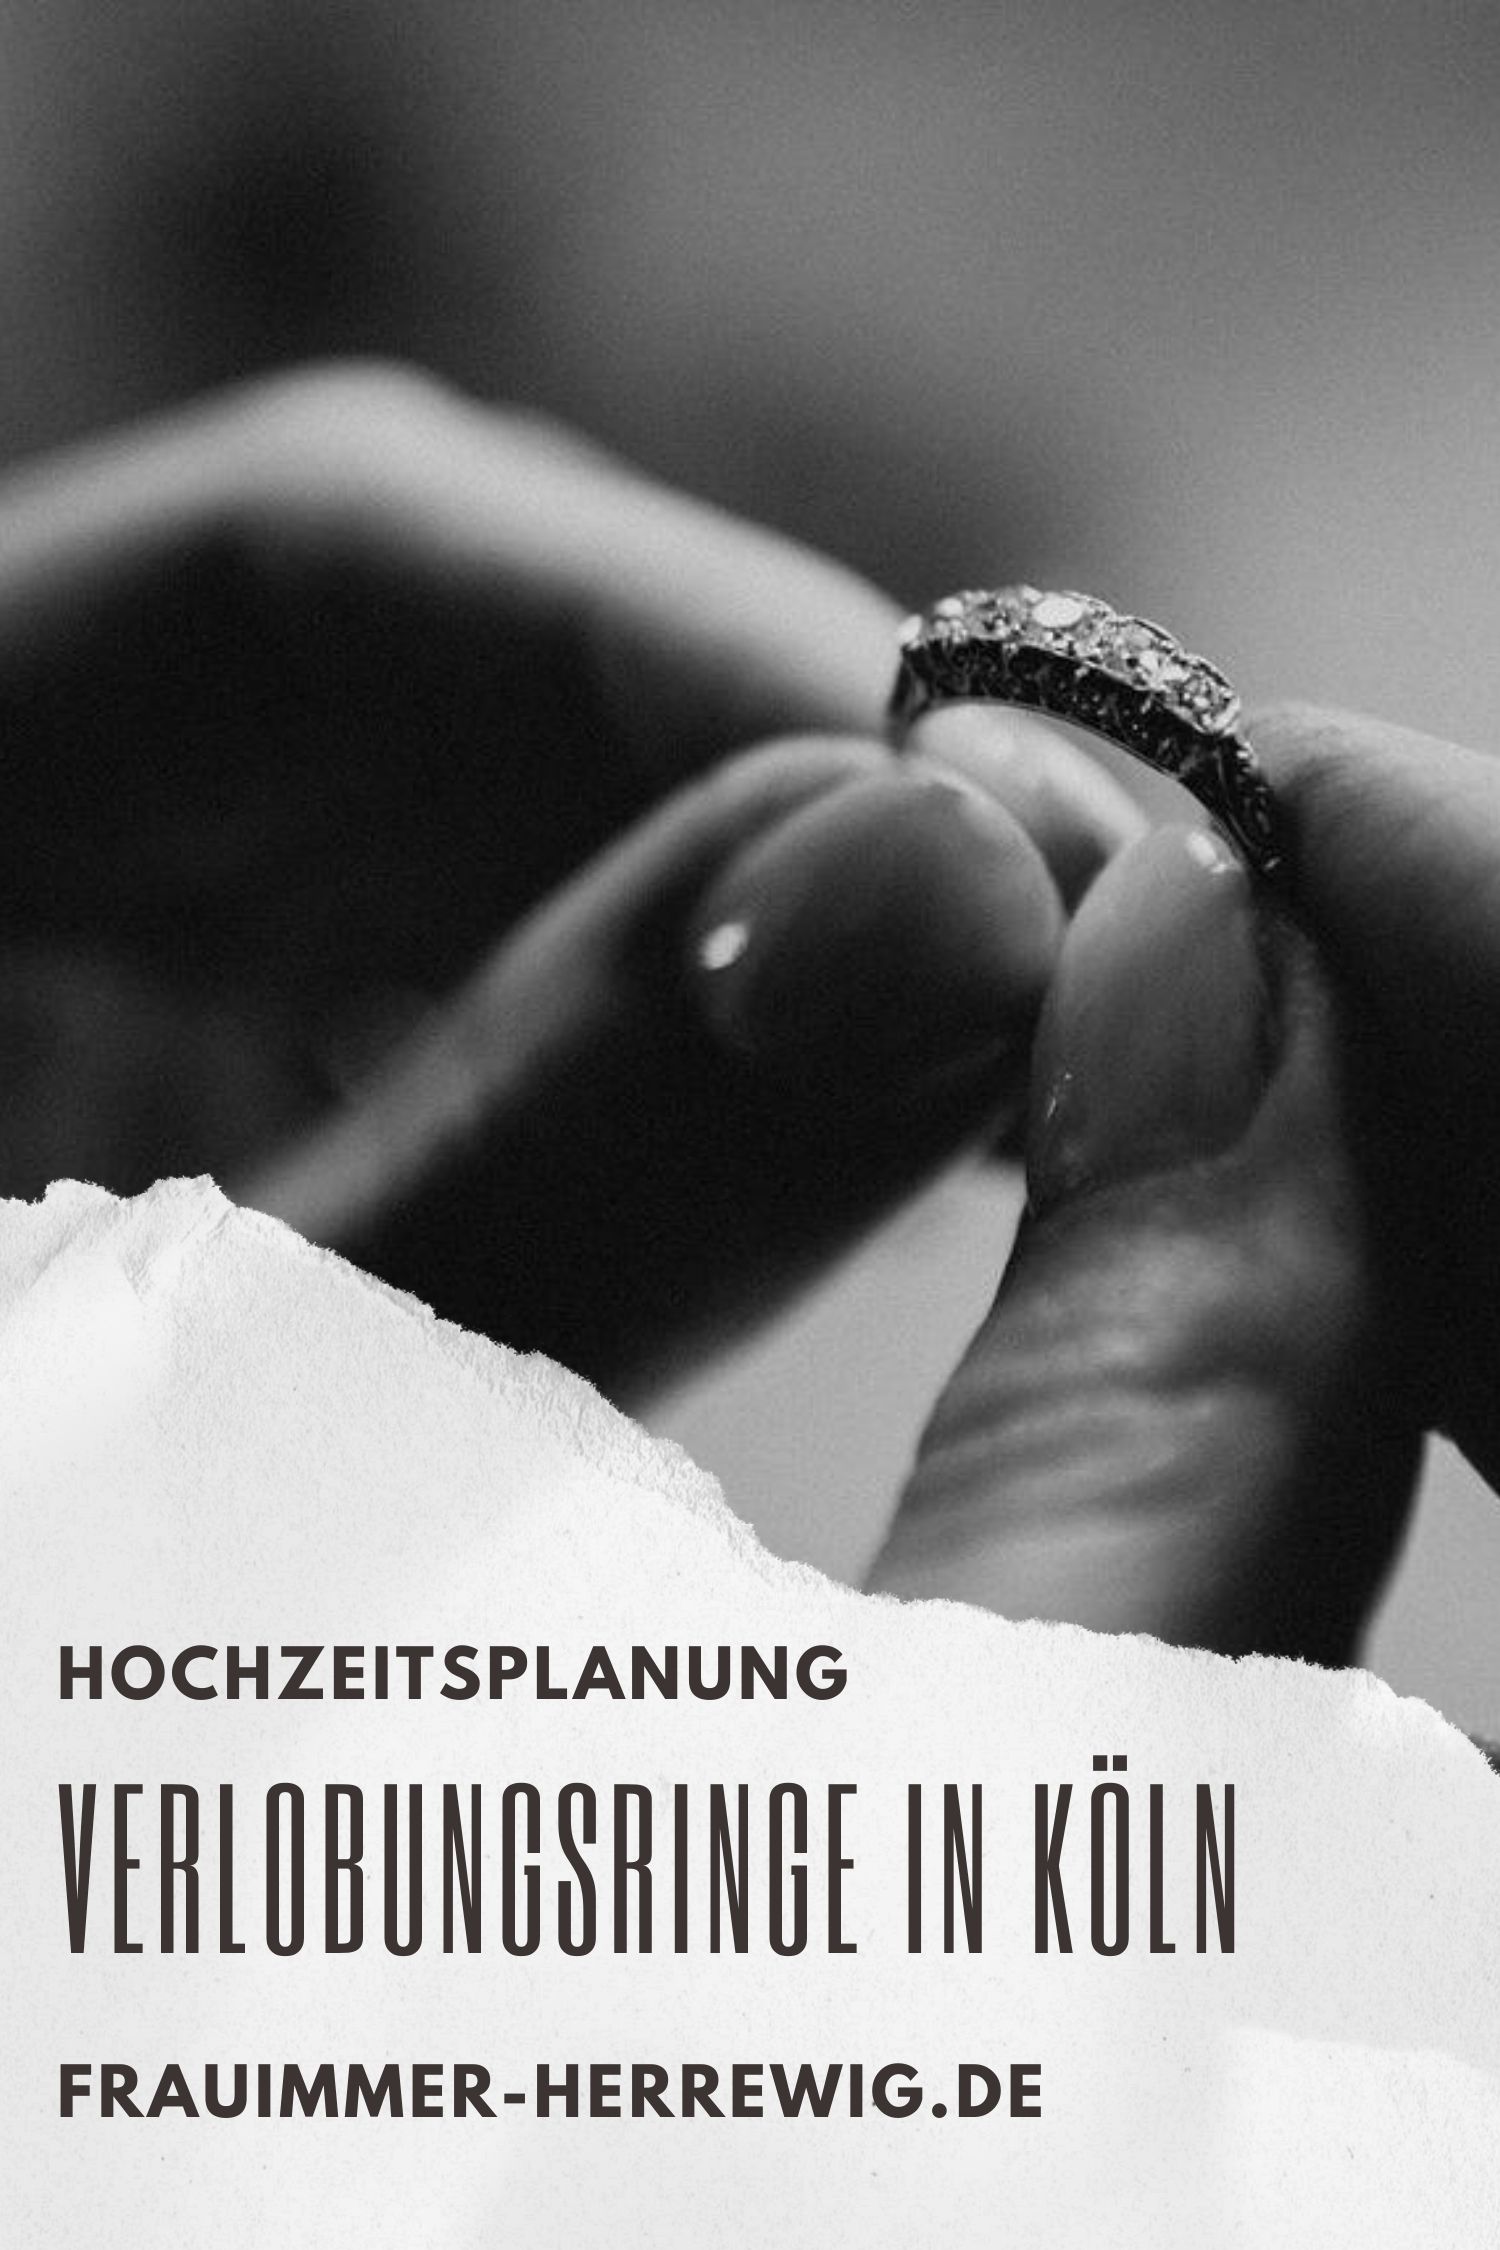 Verlobungsring mit eingefassten Diamanten – gesehen bei frauimmer-herrewig.de